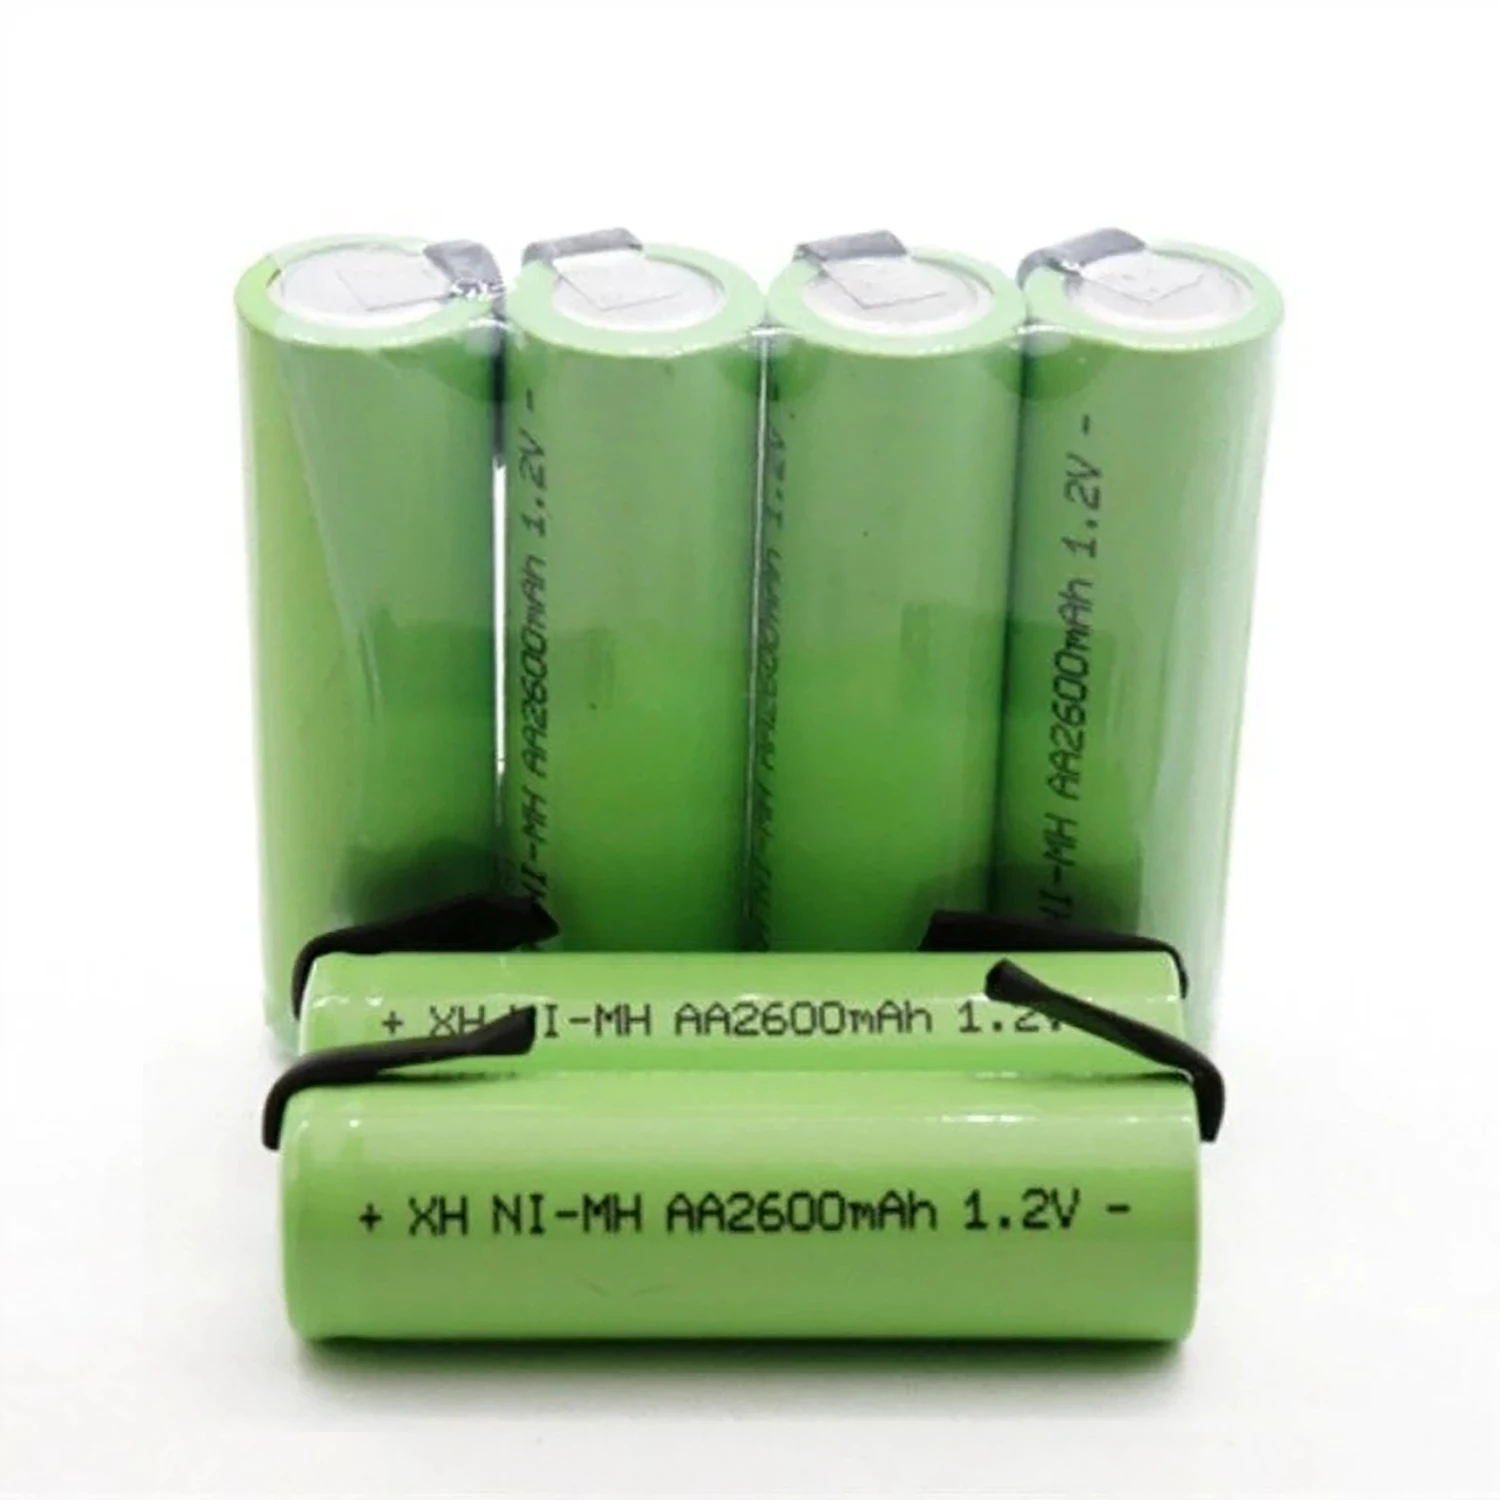 1,2 V AA Akku 2600mah NI-MH Zelle Grün Shell mit Schweißen Tabs für Philips Elektrische Rasierer  Zahnbürste